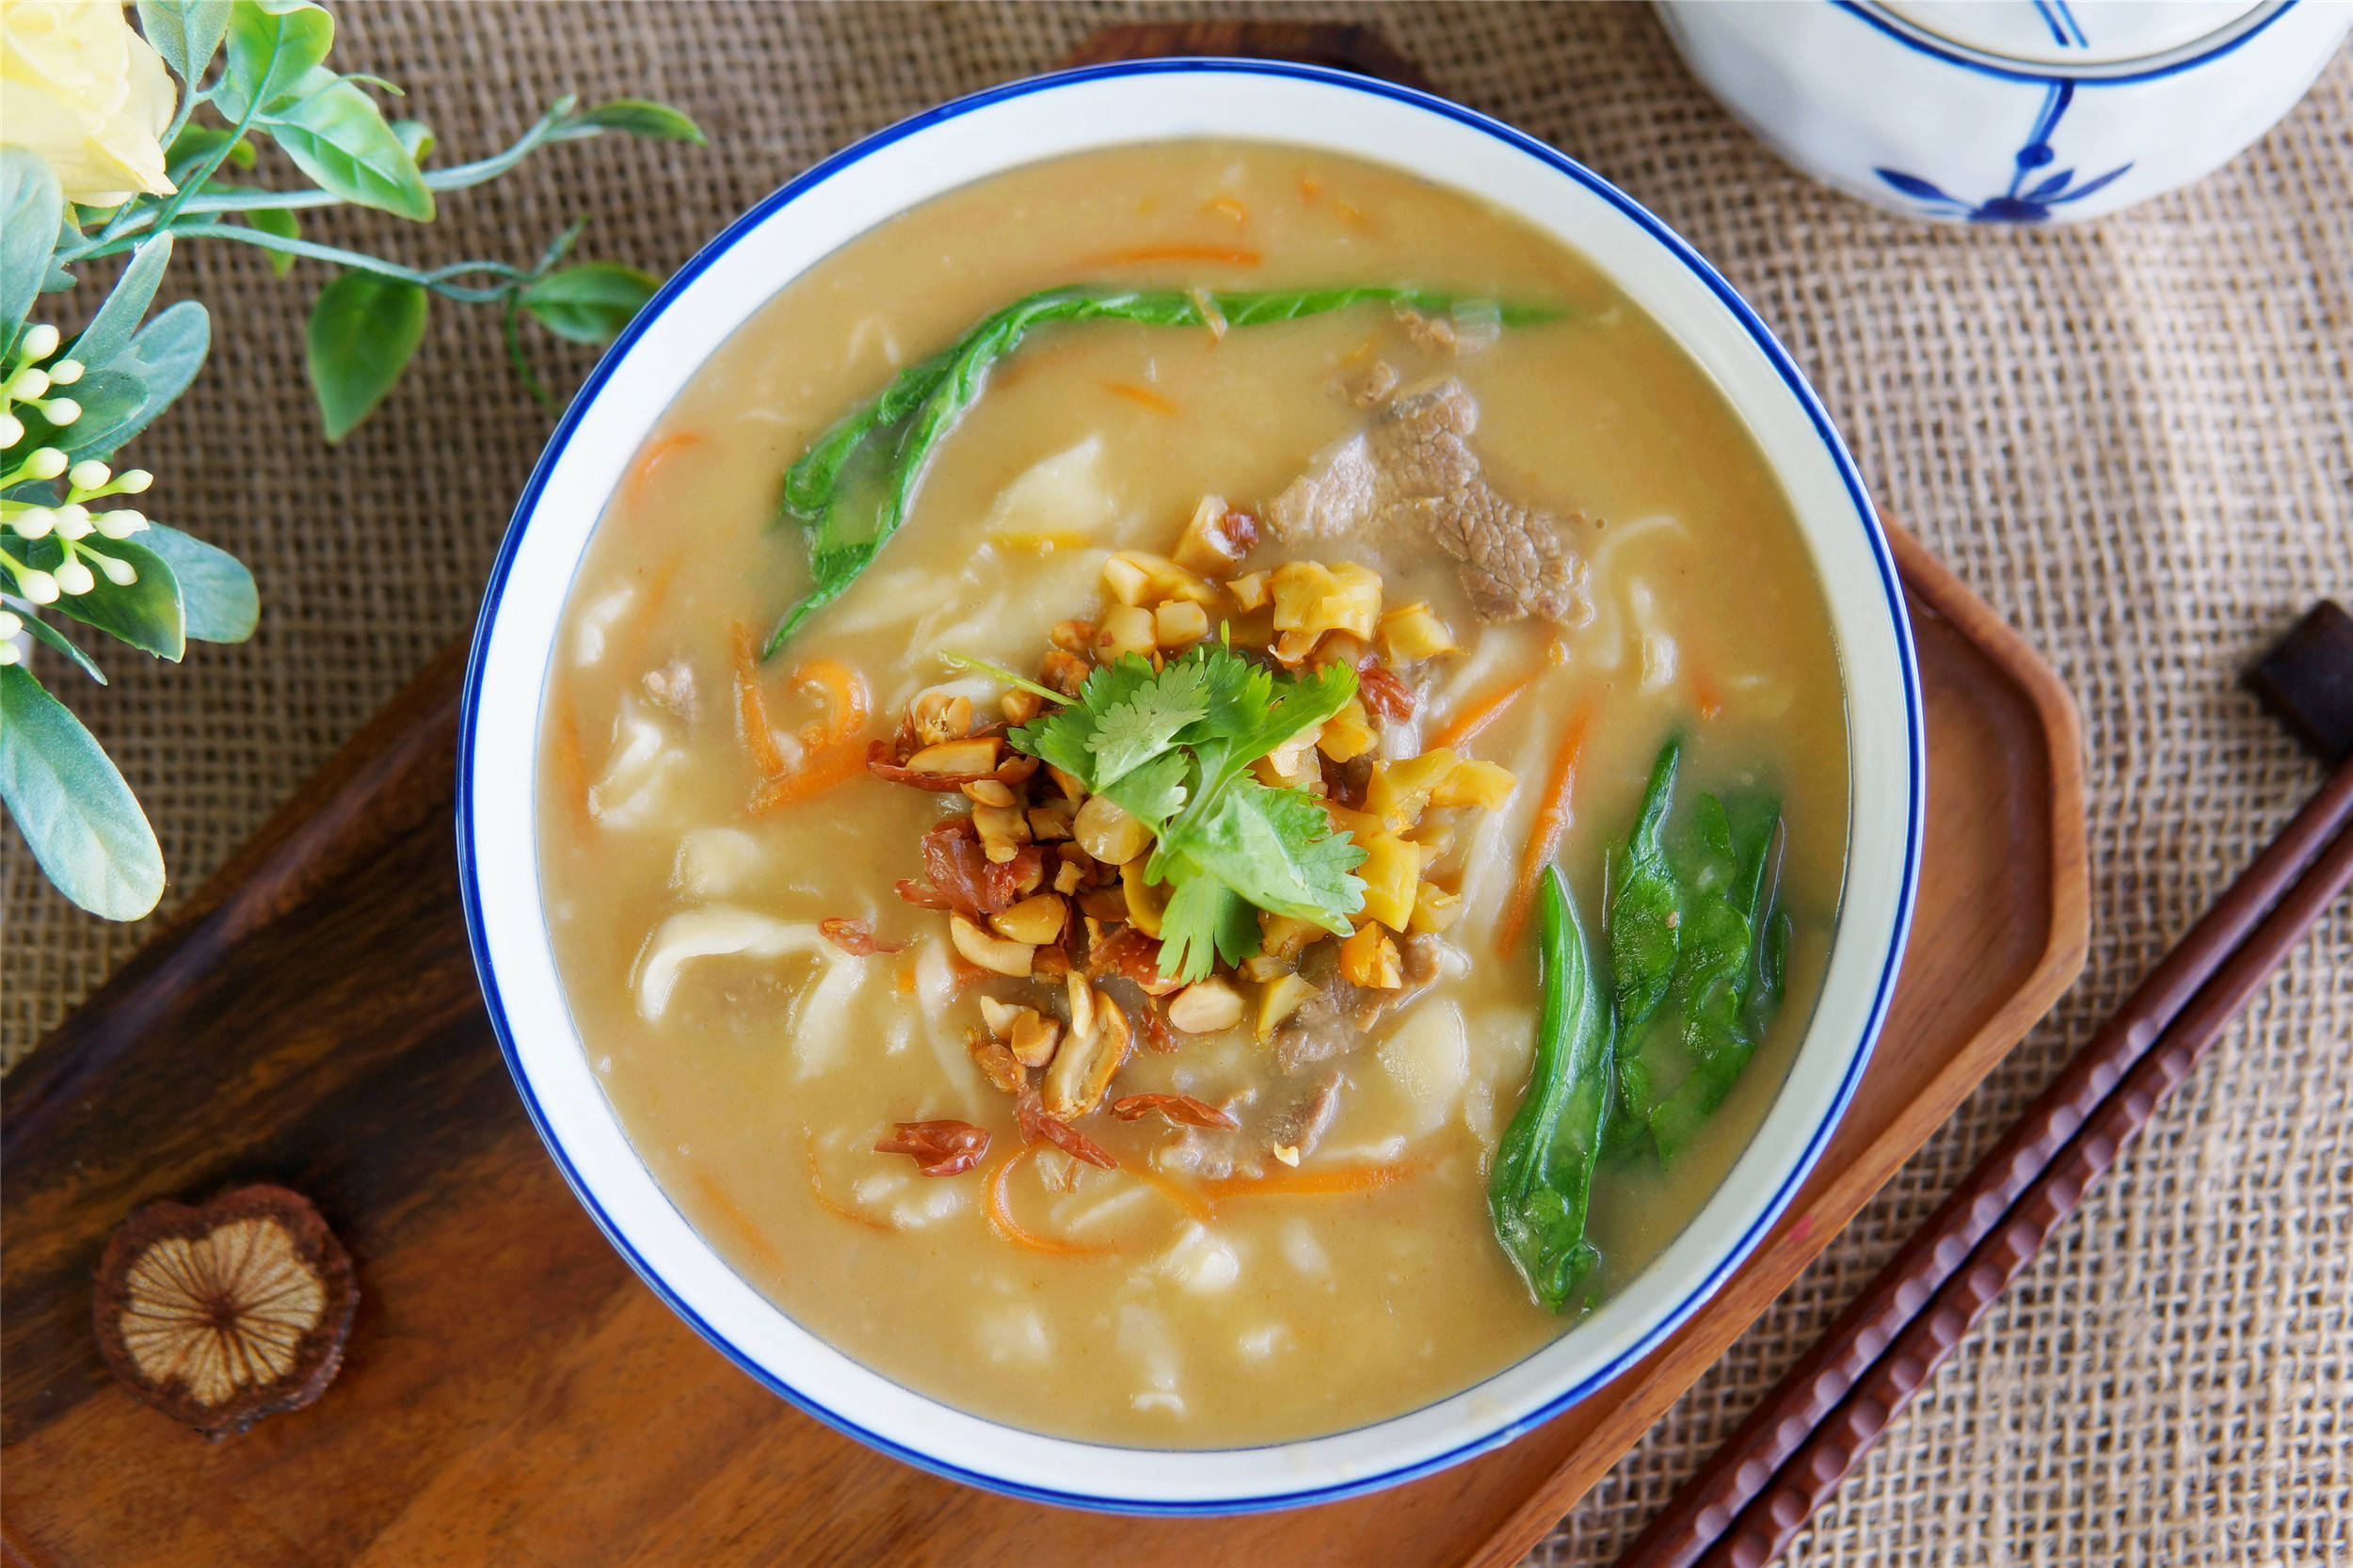 羊肉糊汤面是河南地区的一道传统面食,也是冬日里最佳的"驱寒面"